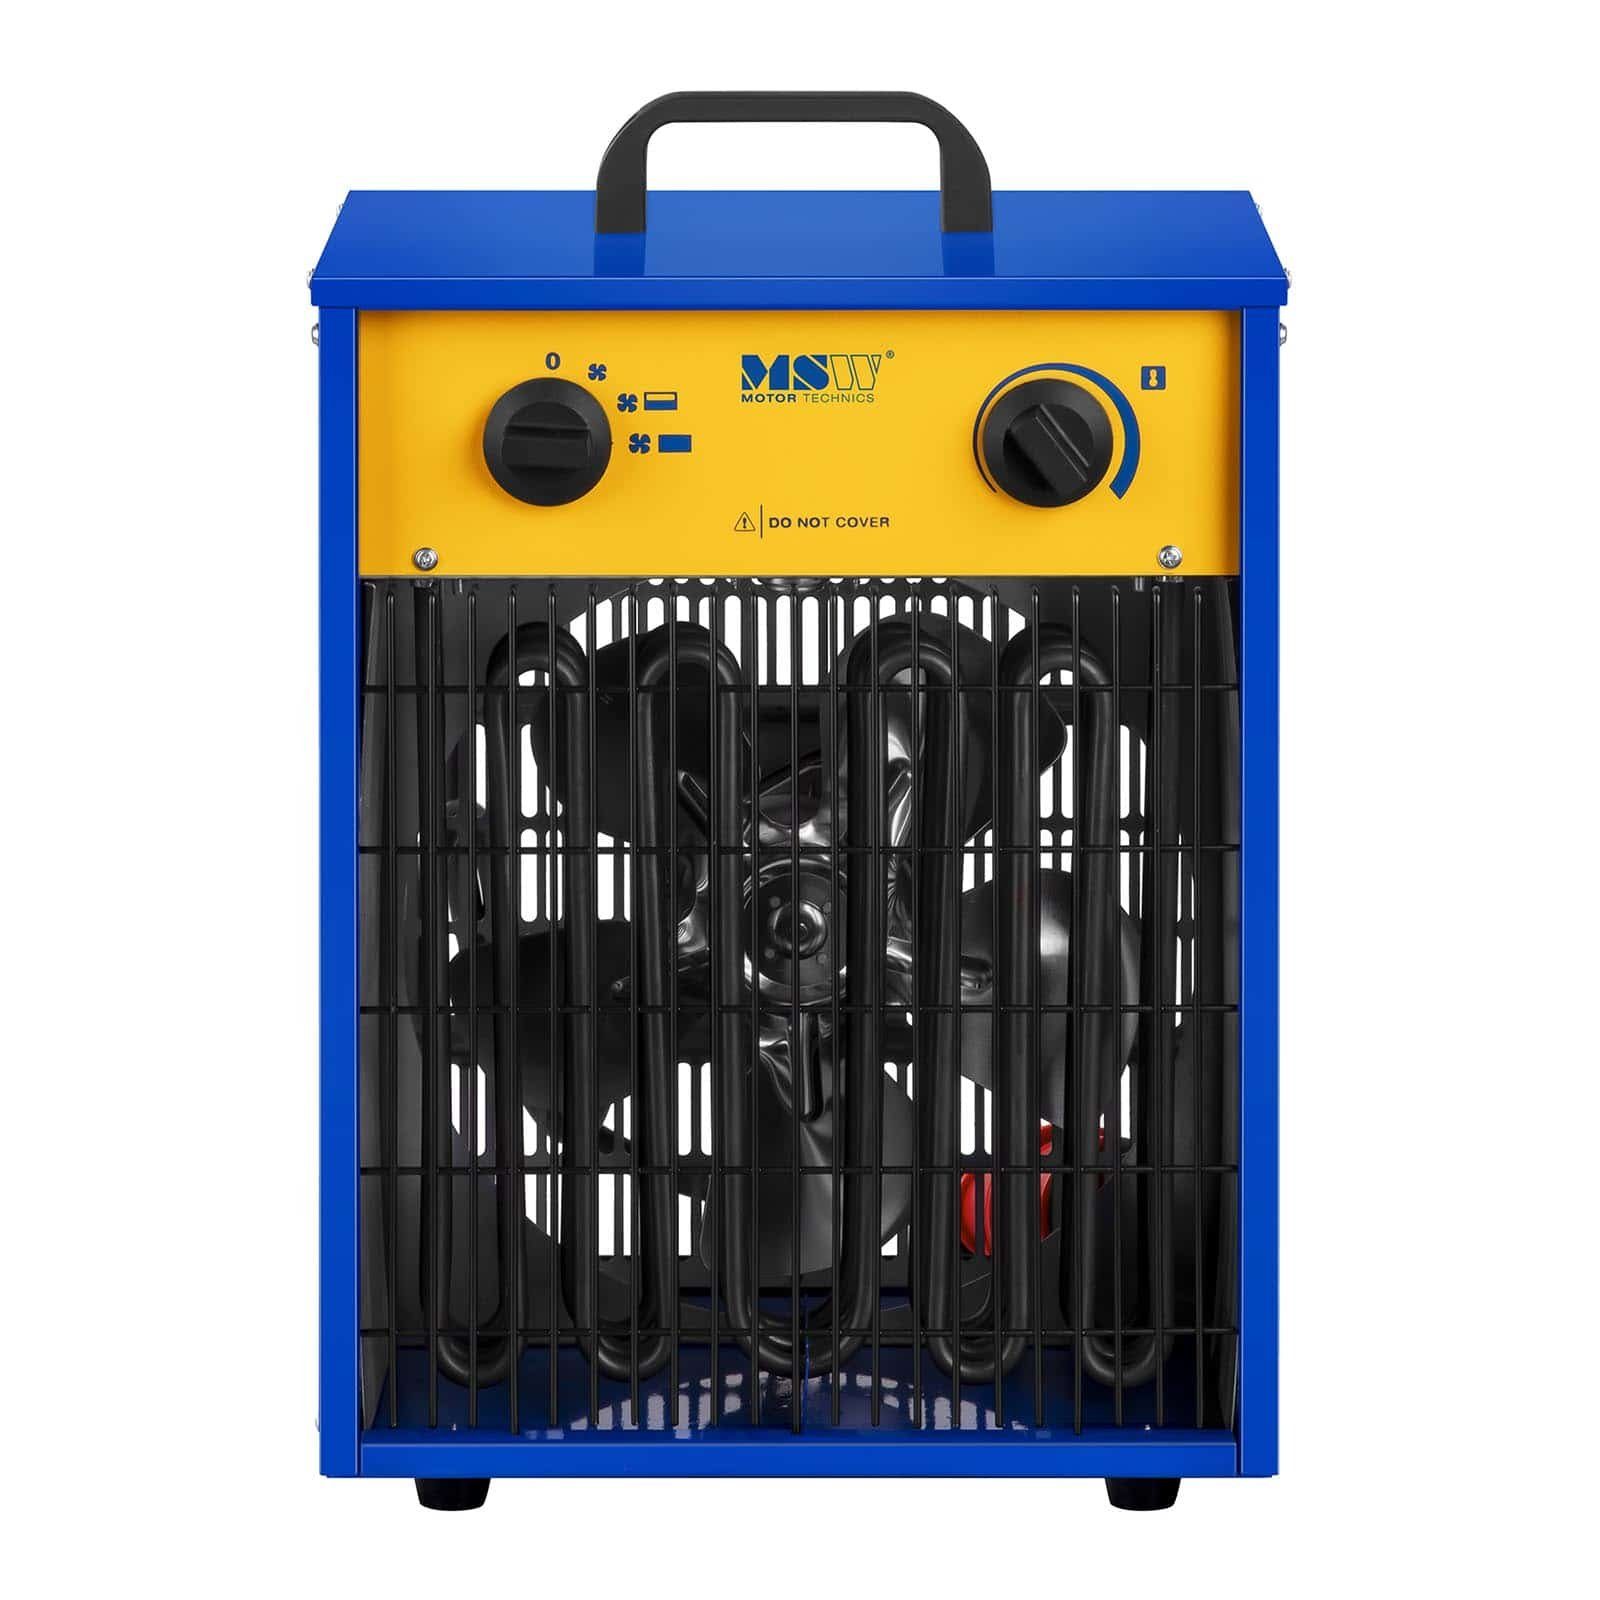 Elektroheizer MSW mit Heizgerät 9.000 °C 0 Kühlfunktion - MSW W 85 - bis